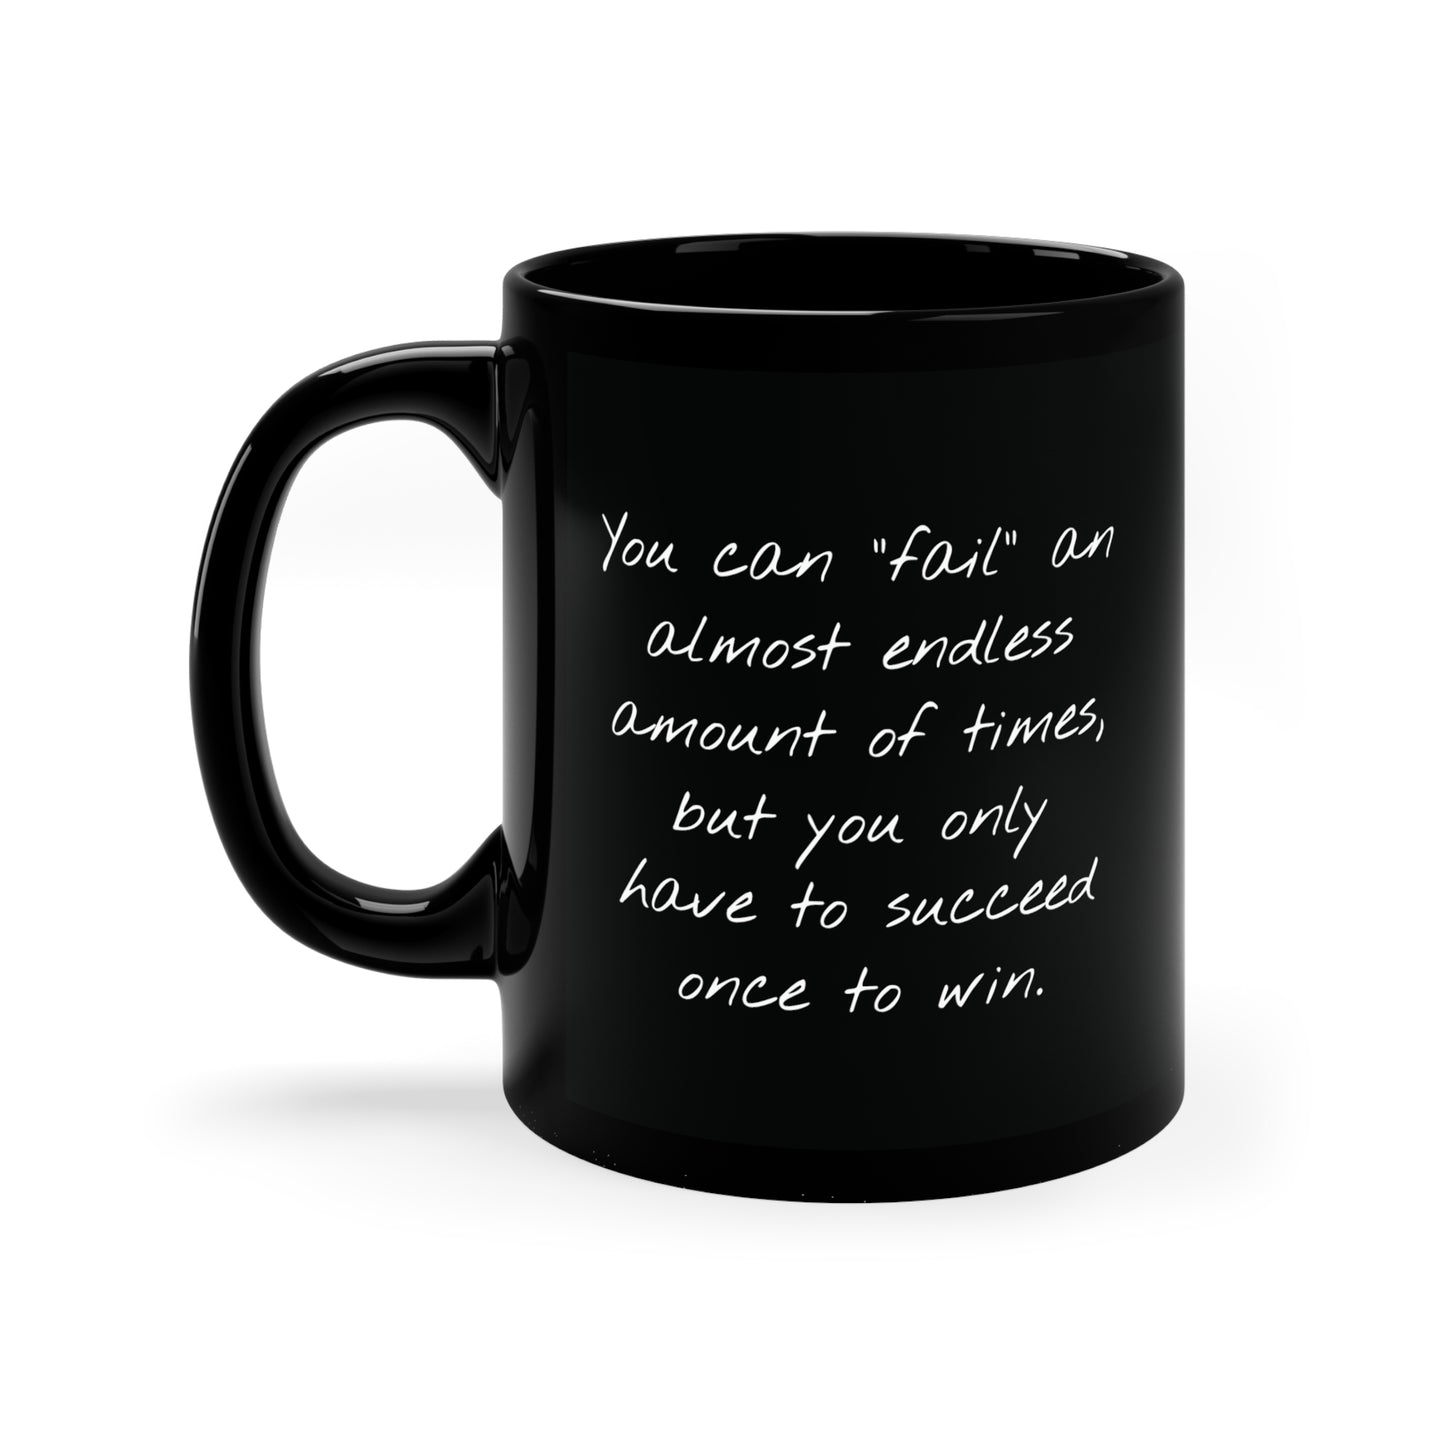 11oz Black Alpha Mug with Success Quote